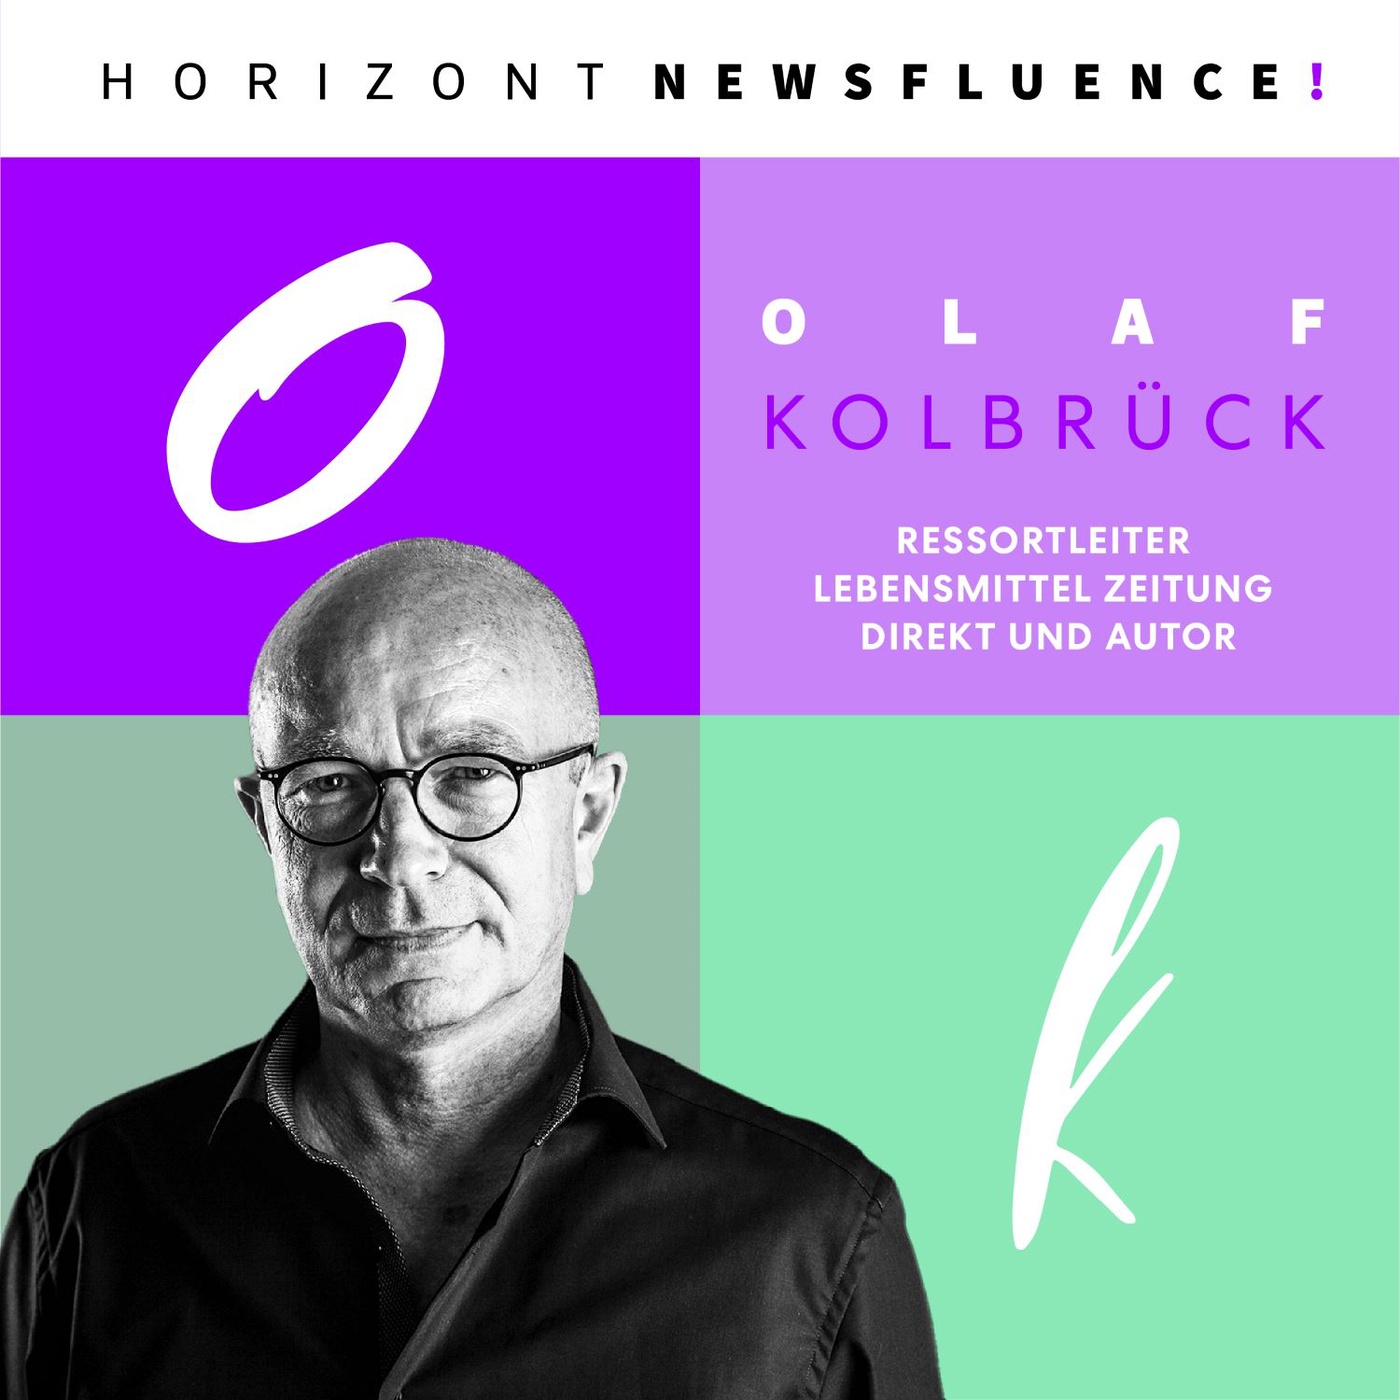 Warum ist eine stabile Community wichtiger als unendlich viele Views, Olaf Kolbrück?